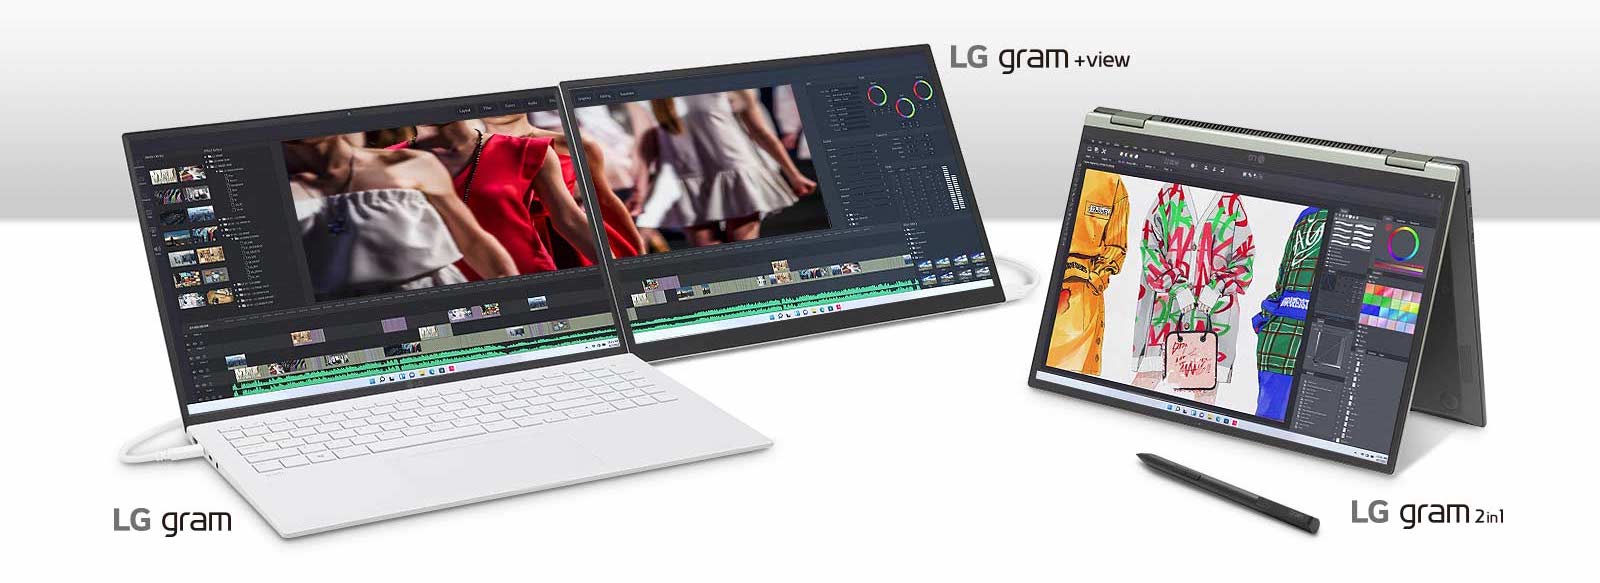 Đánh giá chung về dòng laptop LG gram